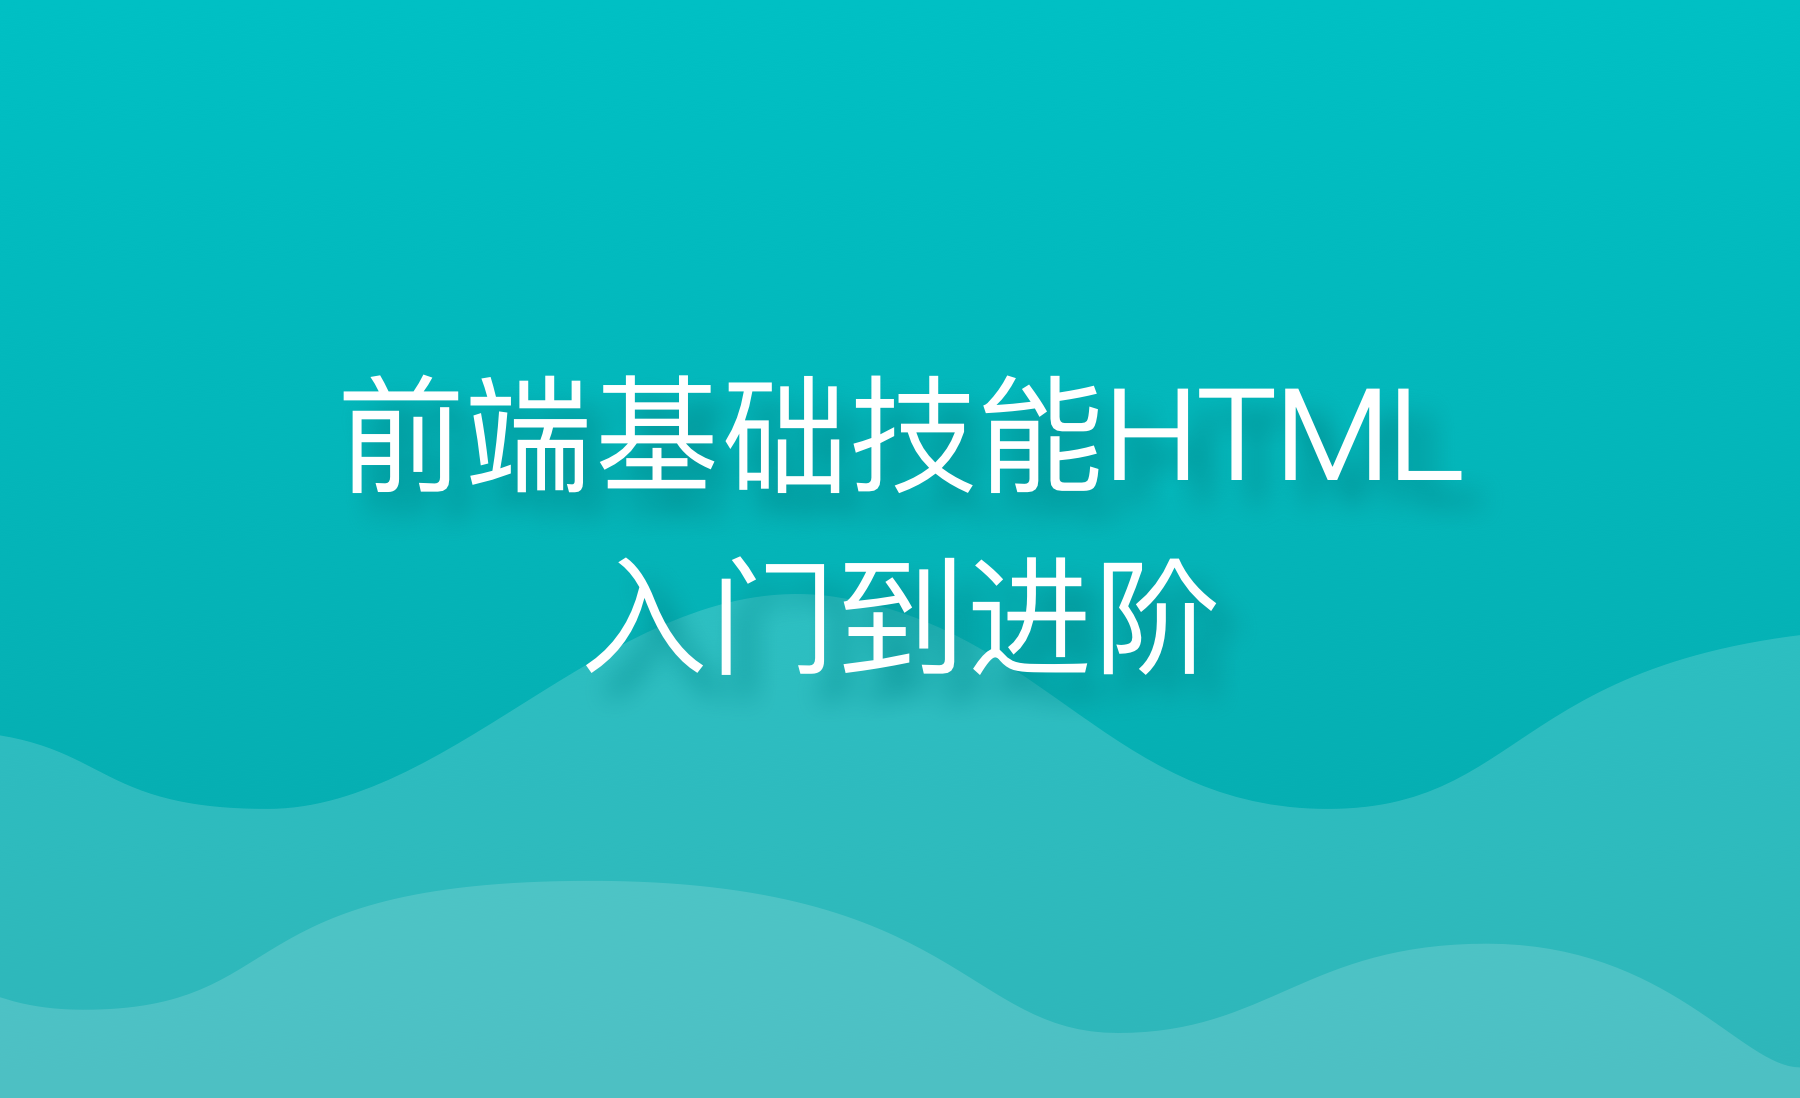 前端基础技能HTML入门到进阶